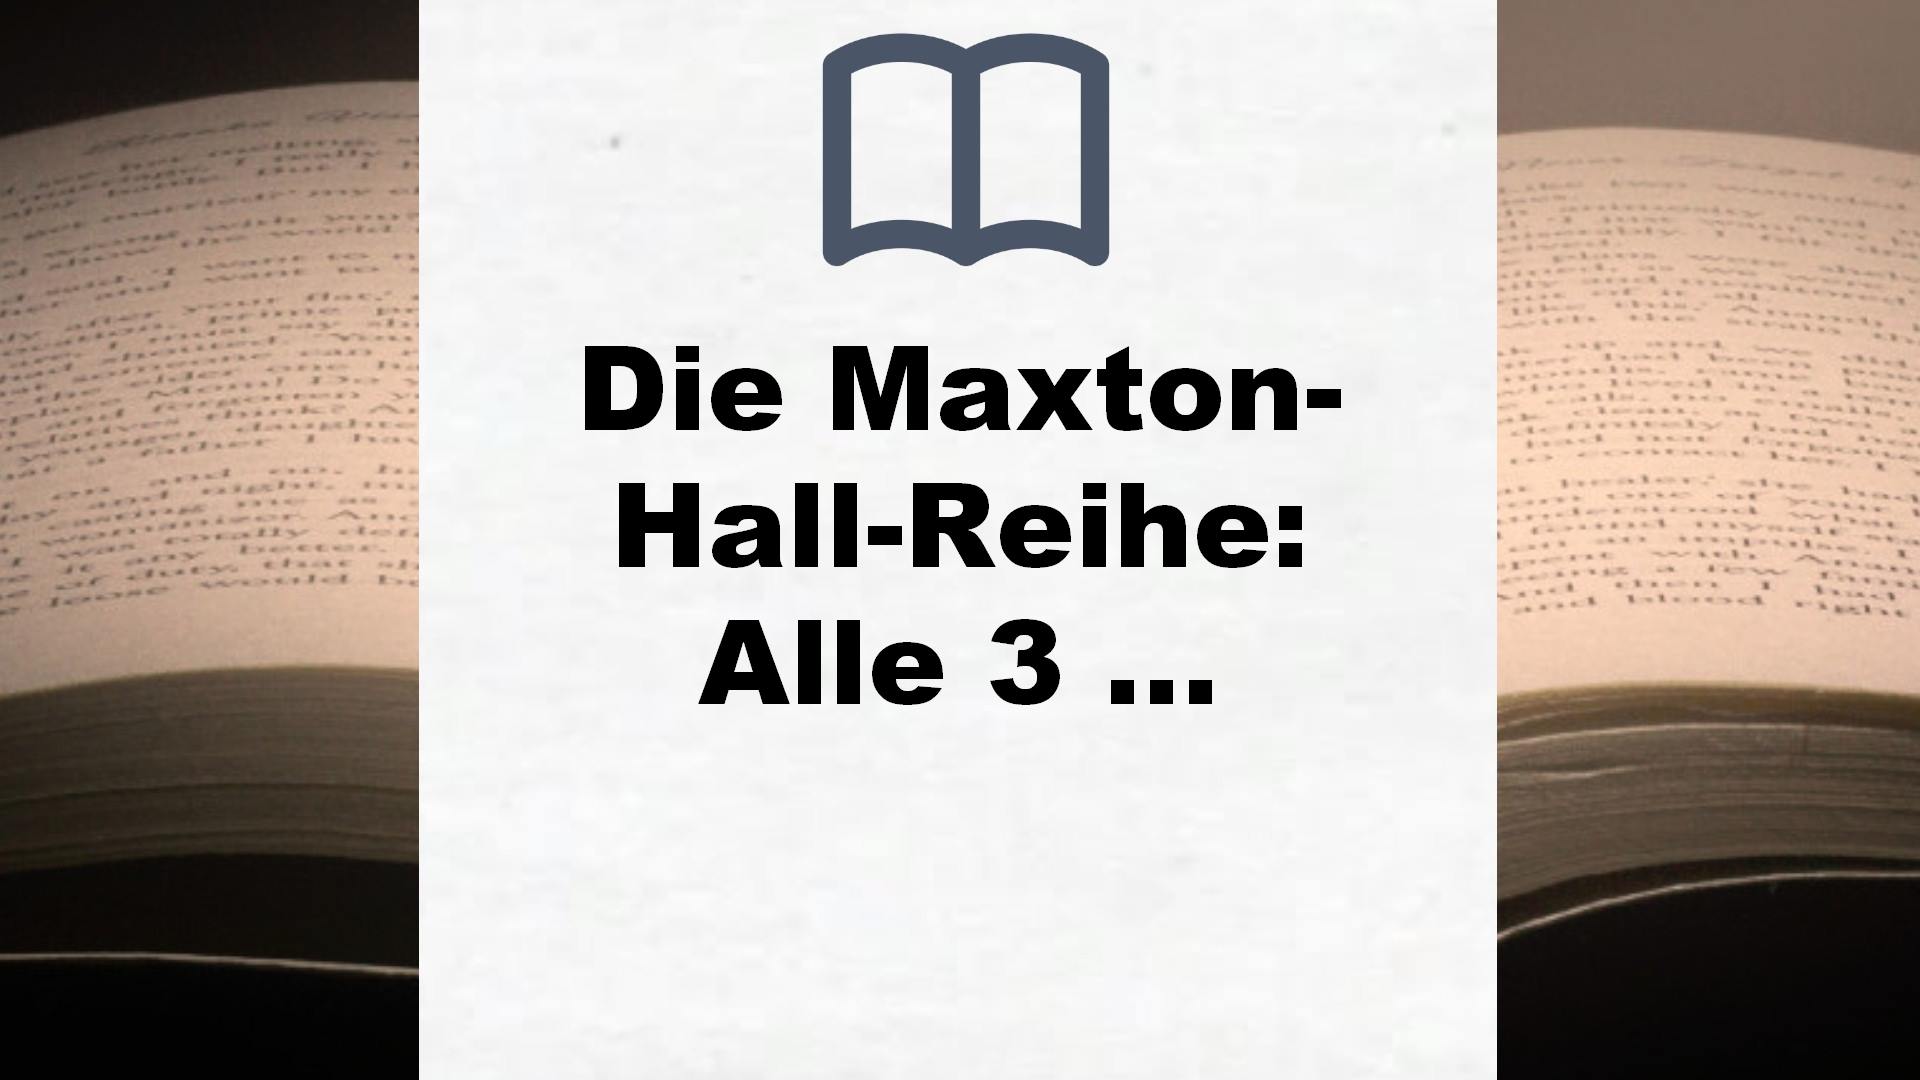 Die Maxton-Hall-Reihe: Alle 3 Bände im Schuber: Save Me. Save You. Save Us. – Buchrezension